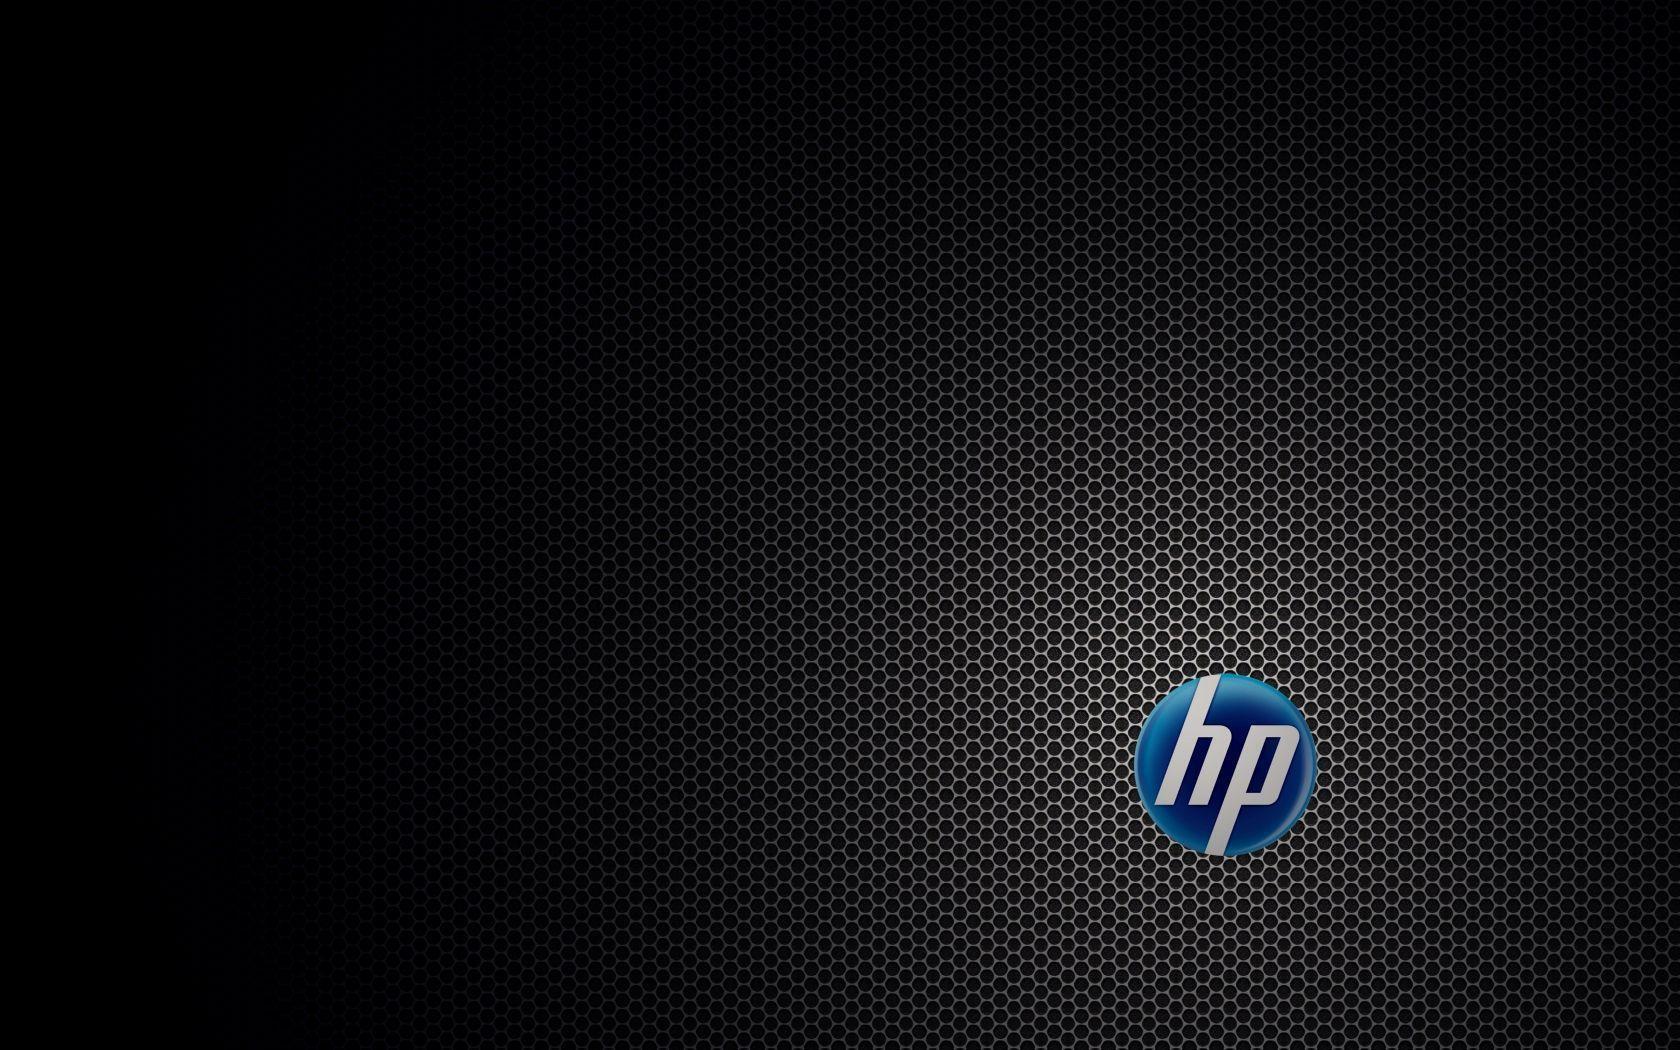 HP Desktop Wallpaper Full Screen